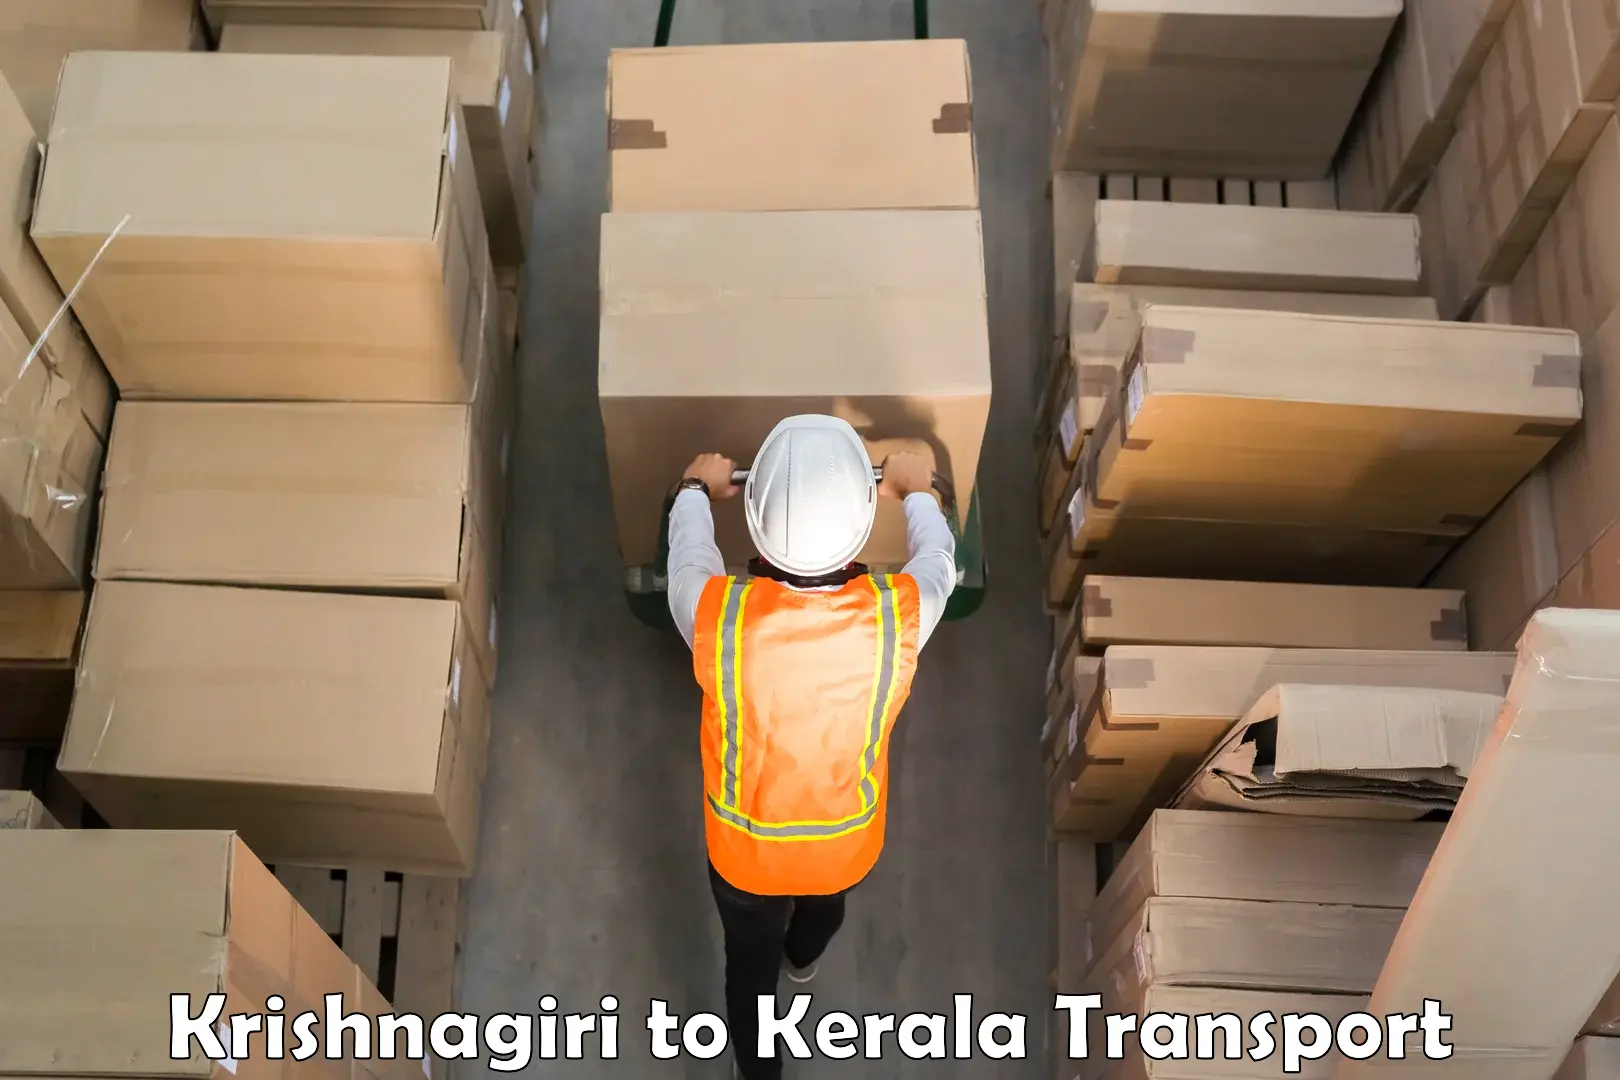 Online transport service Krishnagiri to Attingal